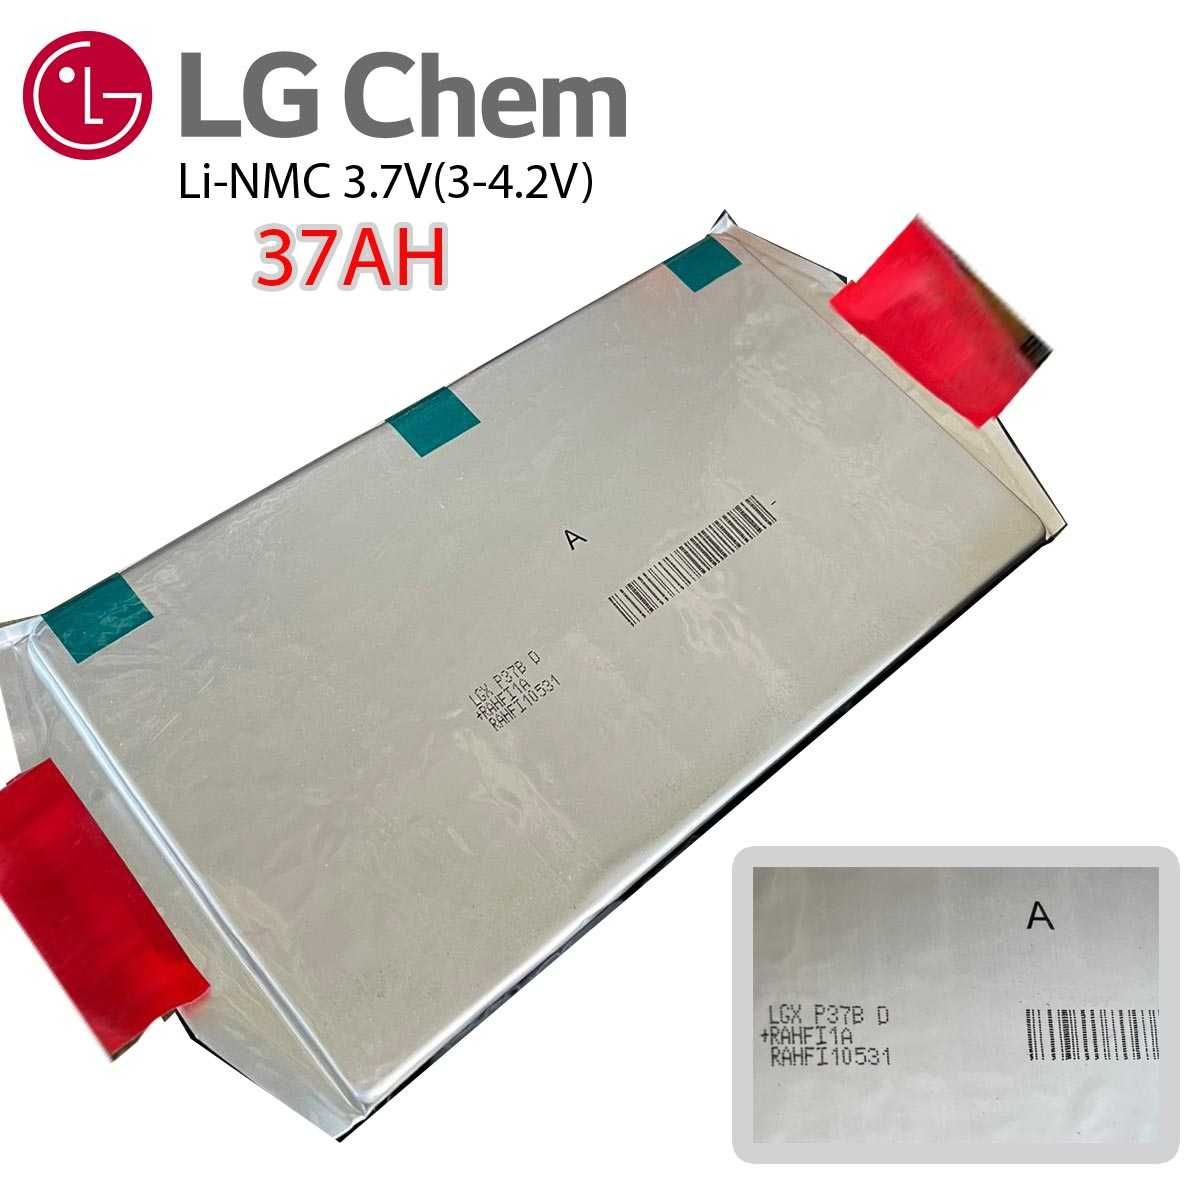 NMC LG Акумулятори LG-chem LGX e34 e41 e66 e71 e78 3.7V електровело